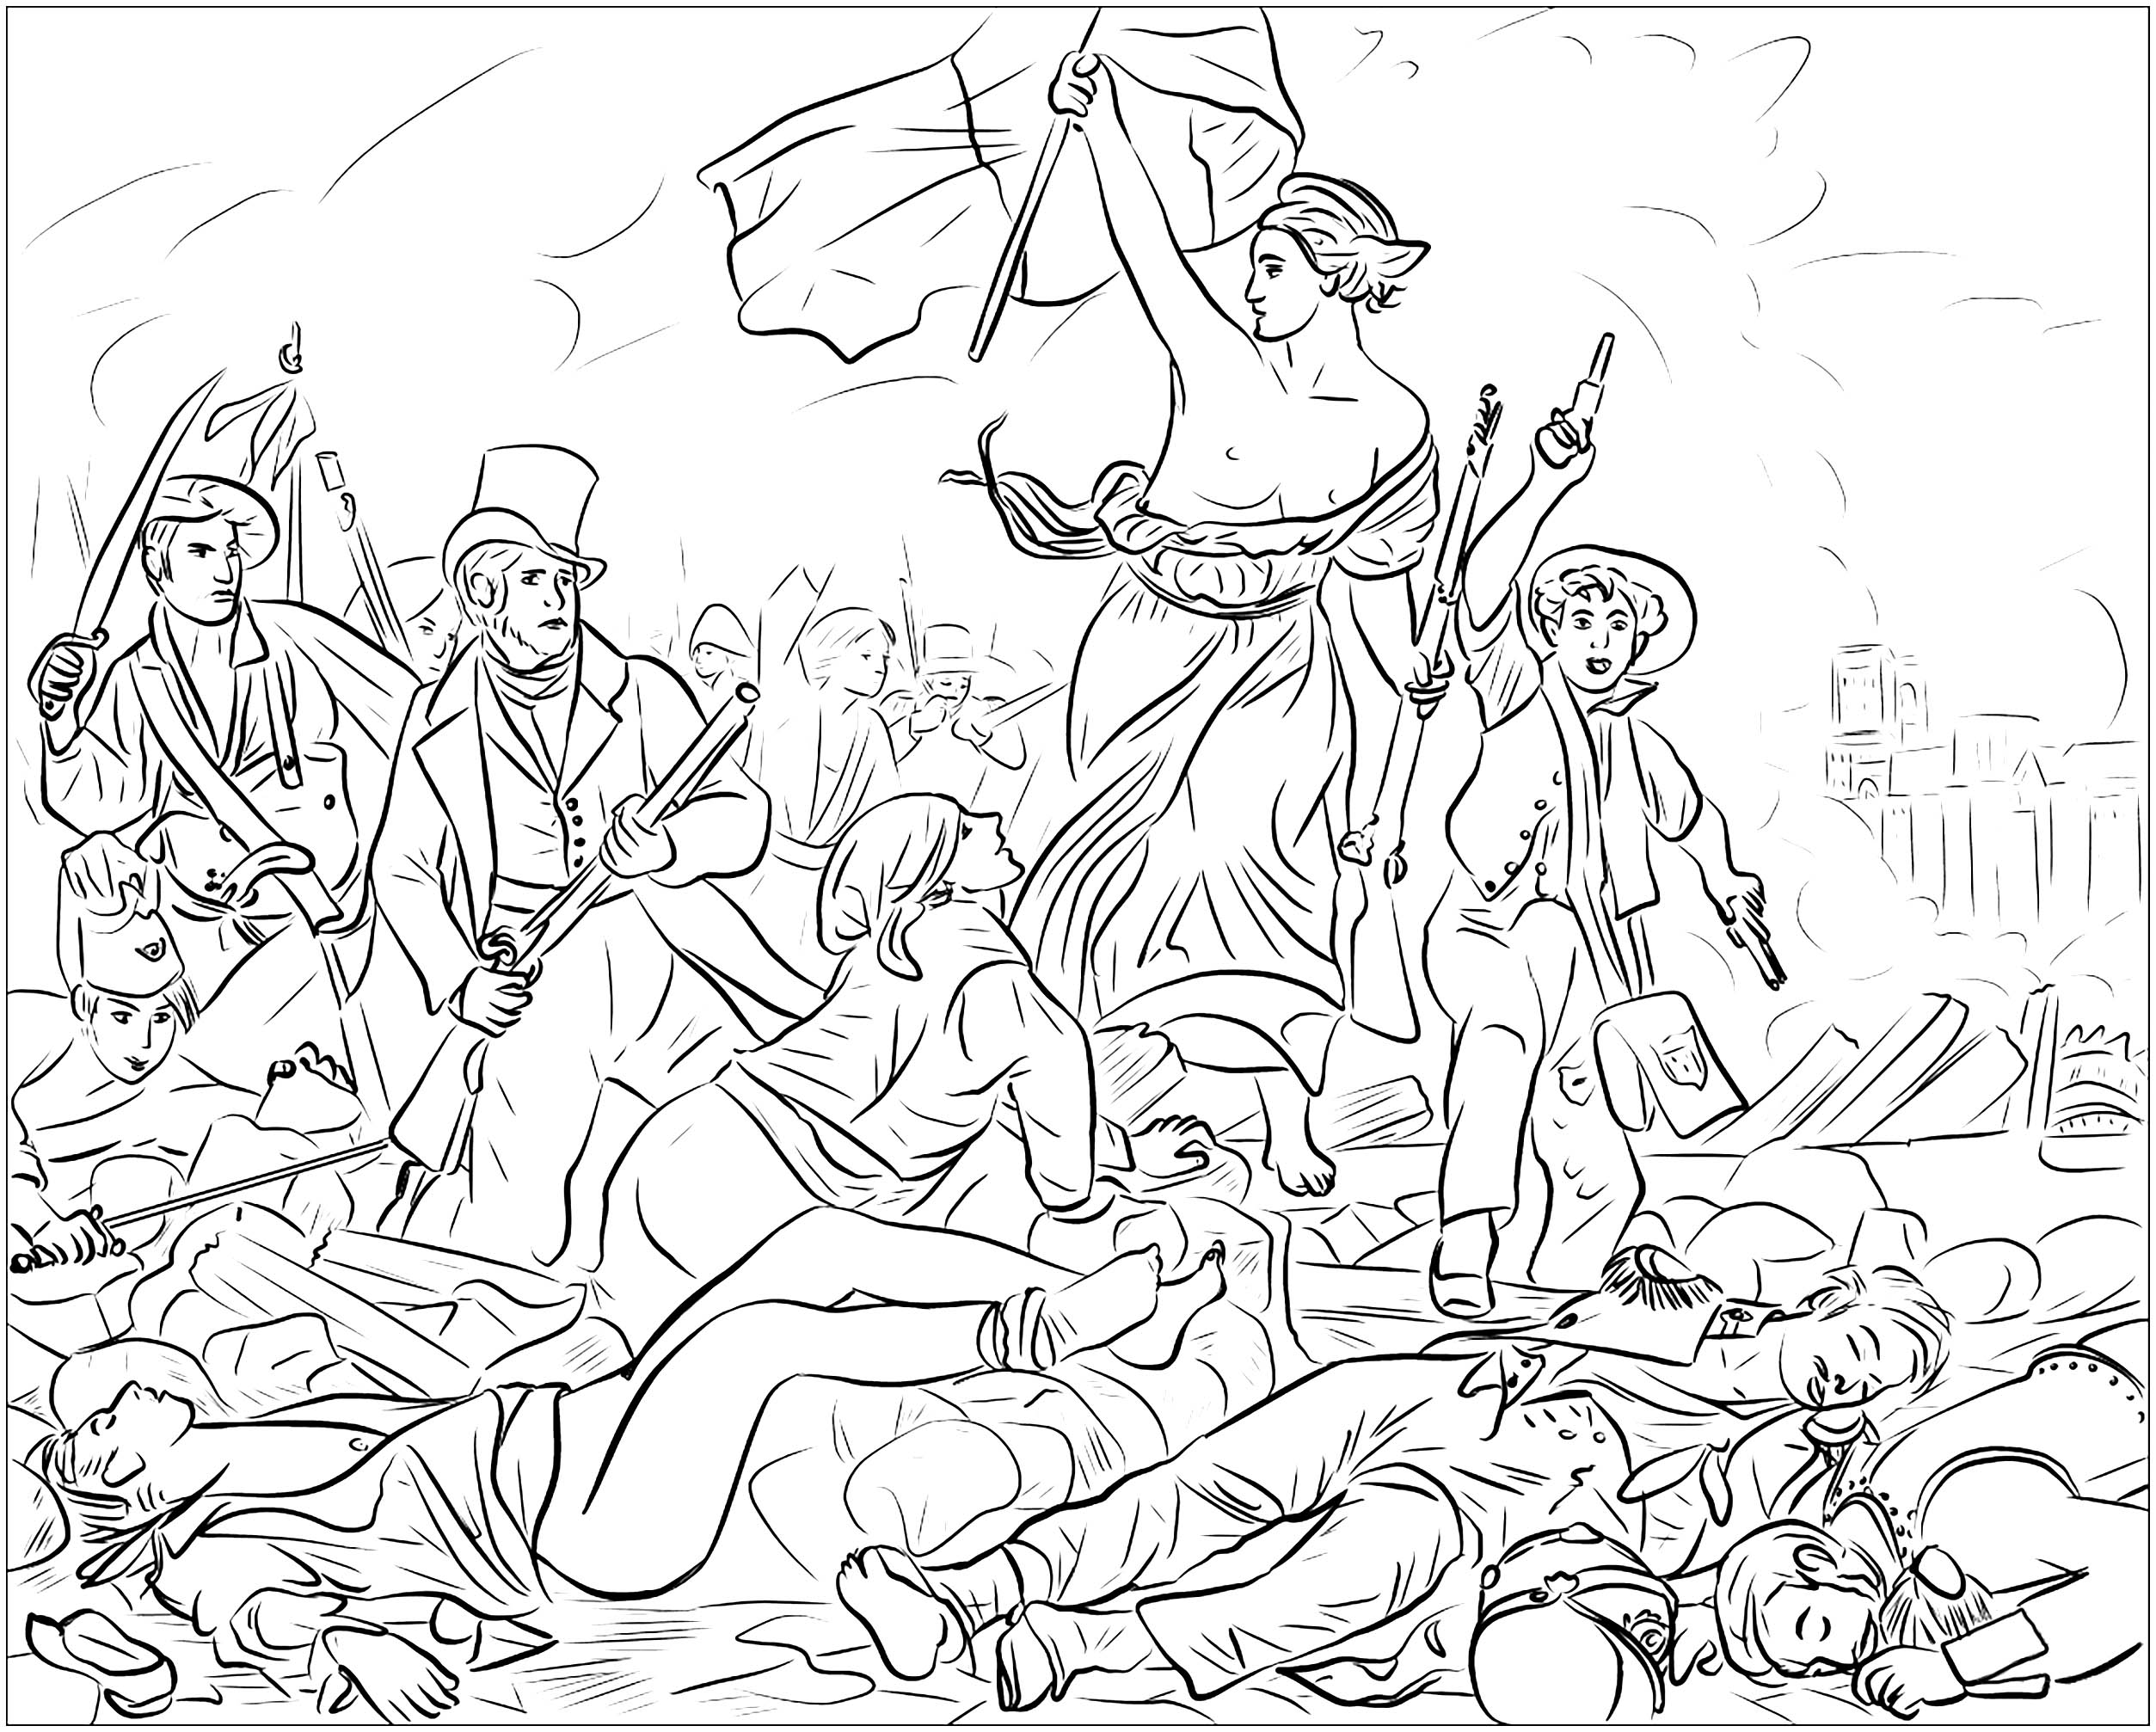 Página para colorear creada a partir del famoso cuadro conmemorativo de la Revolución de Julio de 1830 en Francia, de Eugène Delacroix : La libertad guiando al pueblo, Origen : supercoloring   Artista : Nata Silina